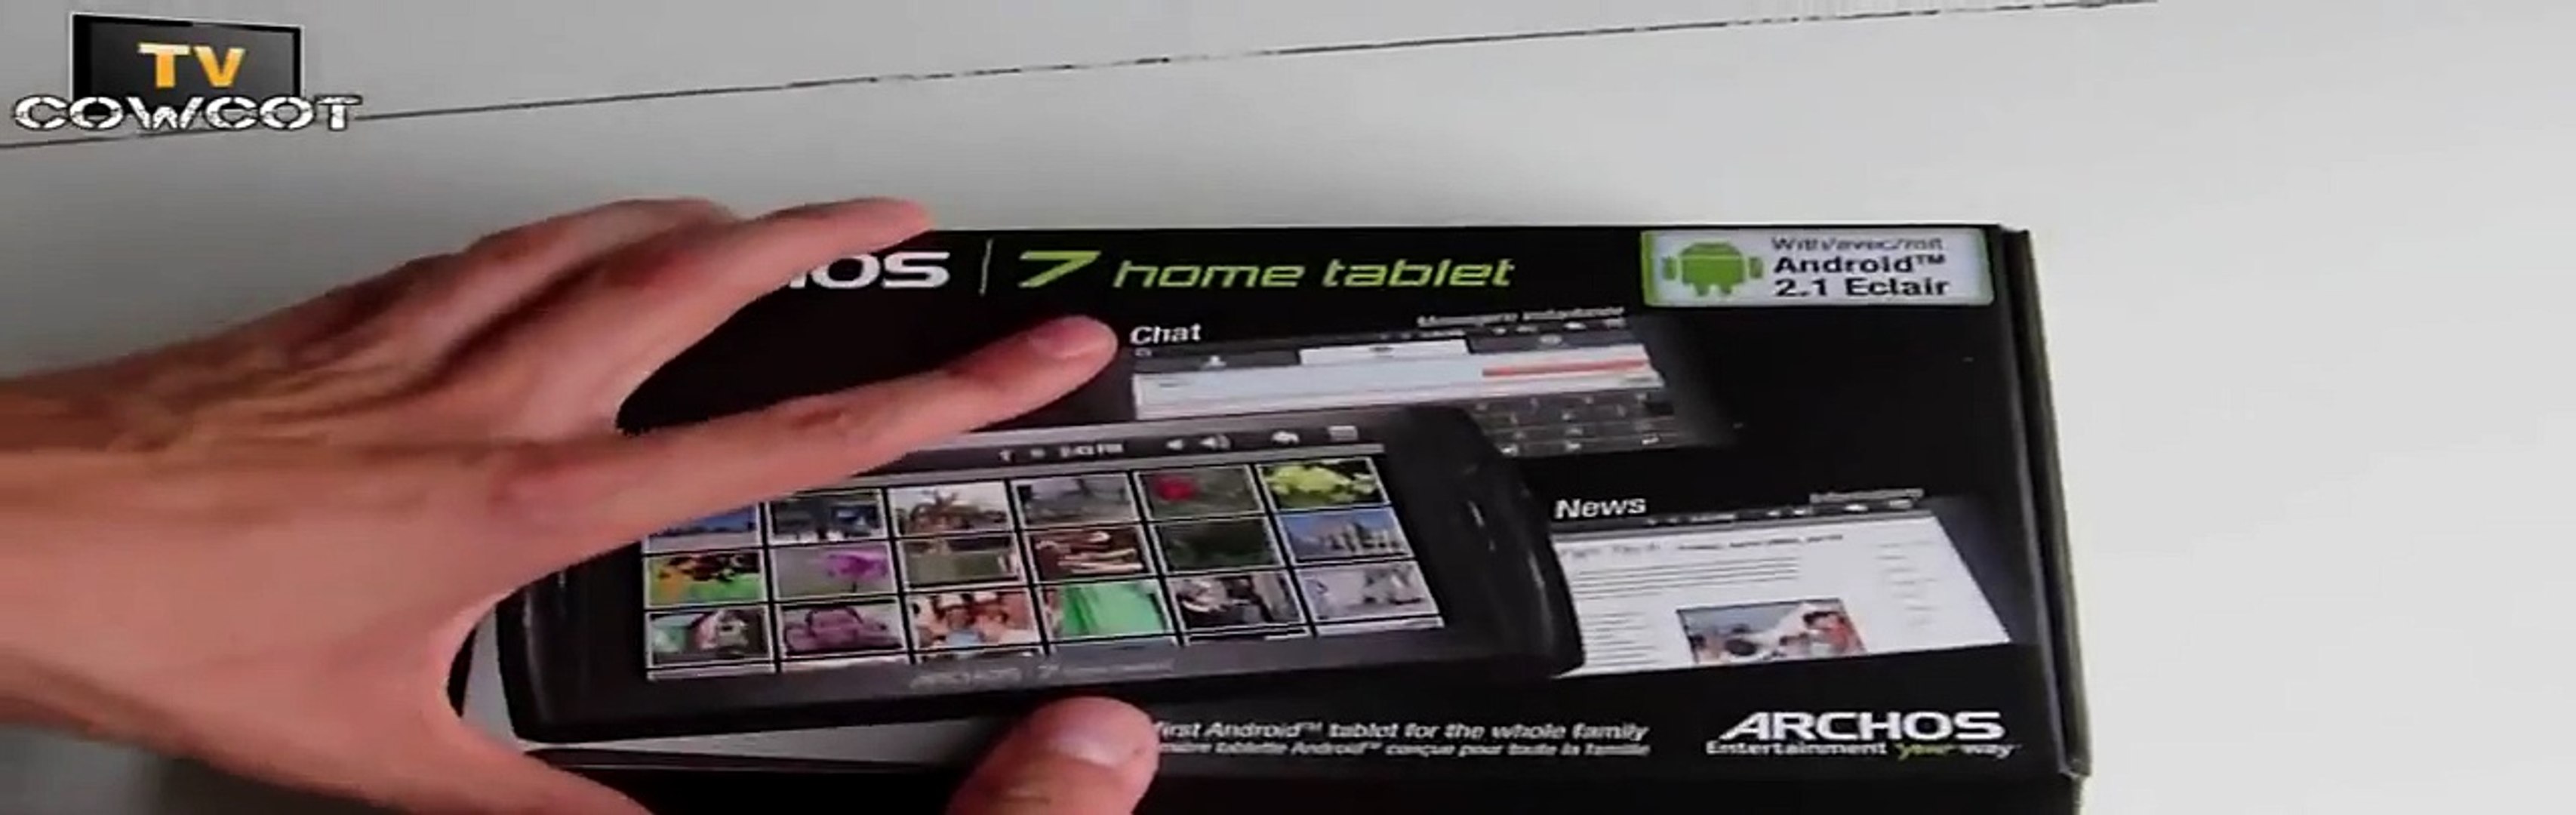 Cowcot TV] Déballage Archos 7 Home Tablet - Vidéo Dailymotion